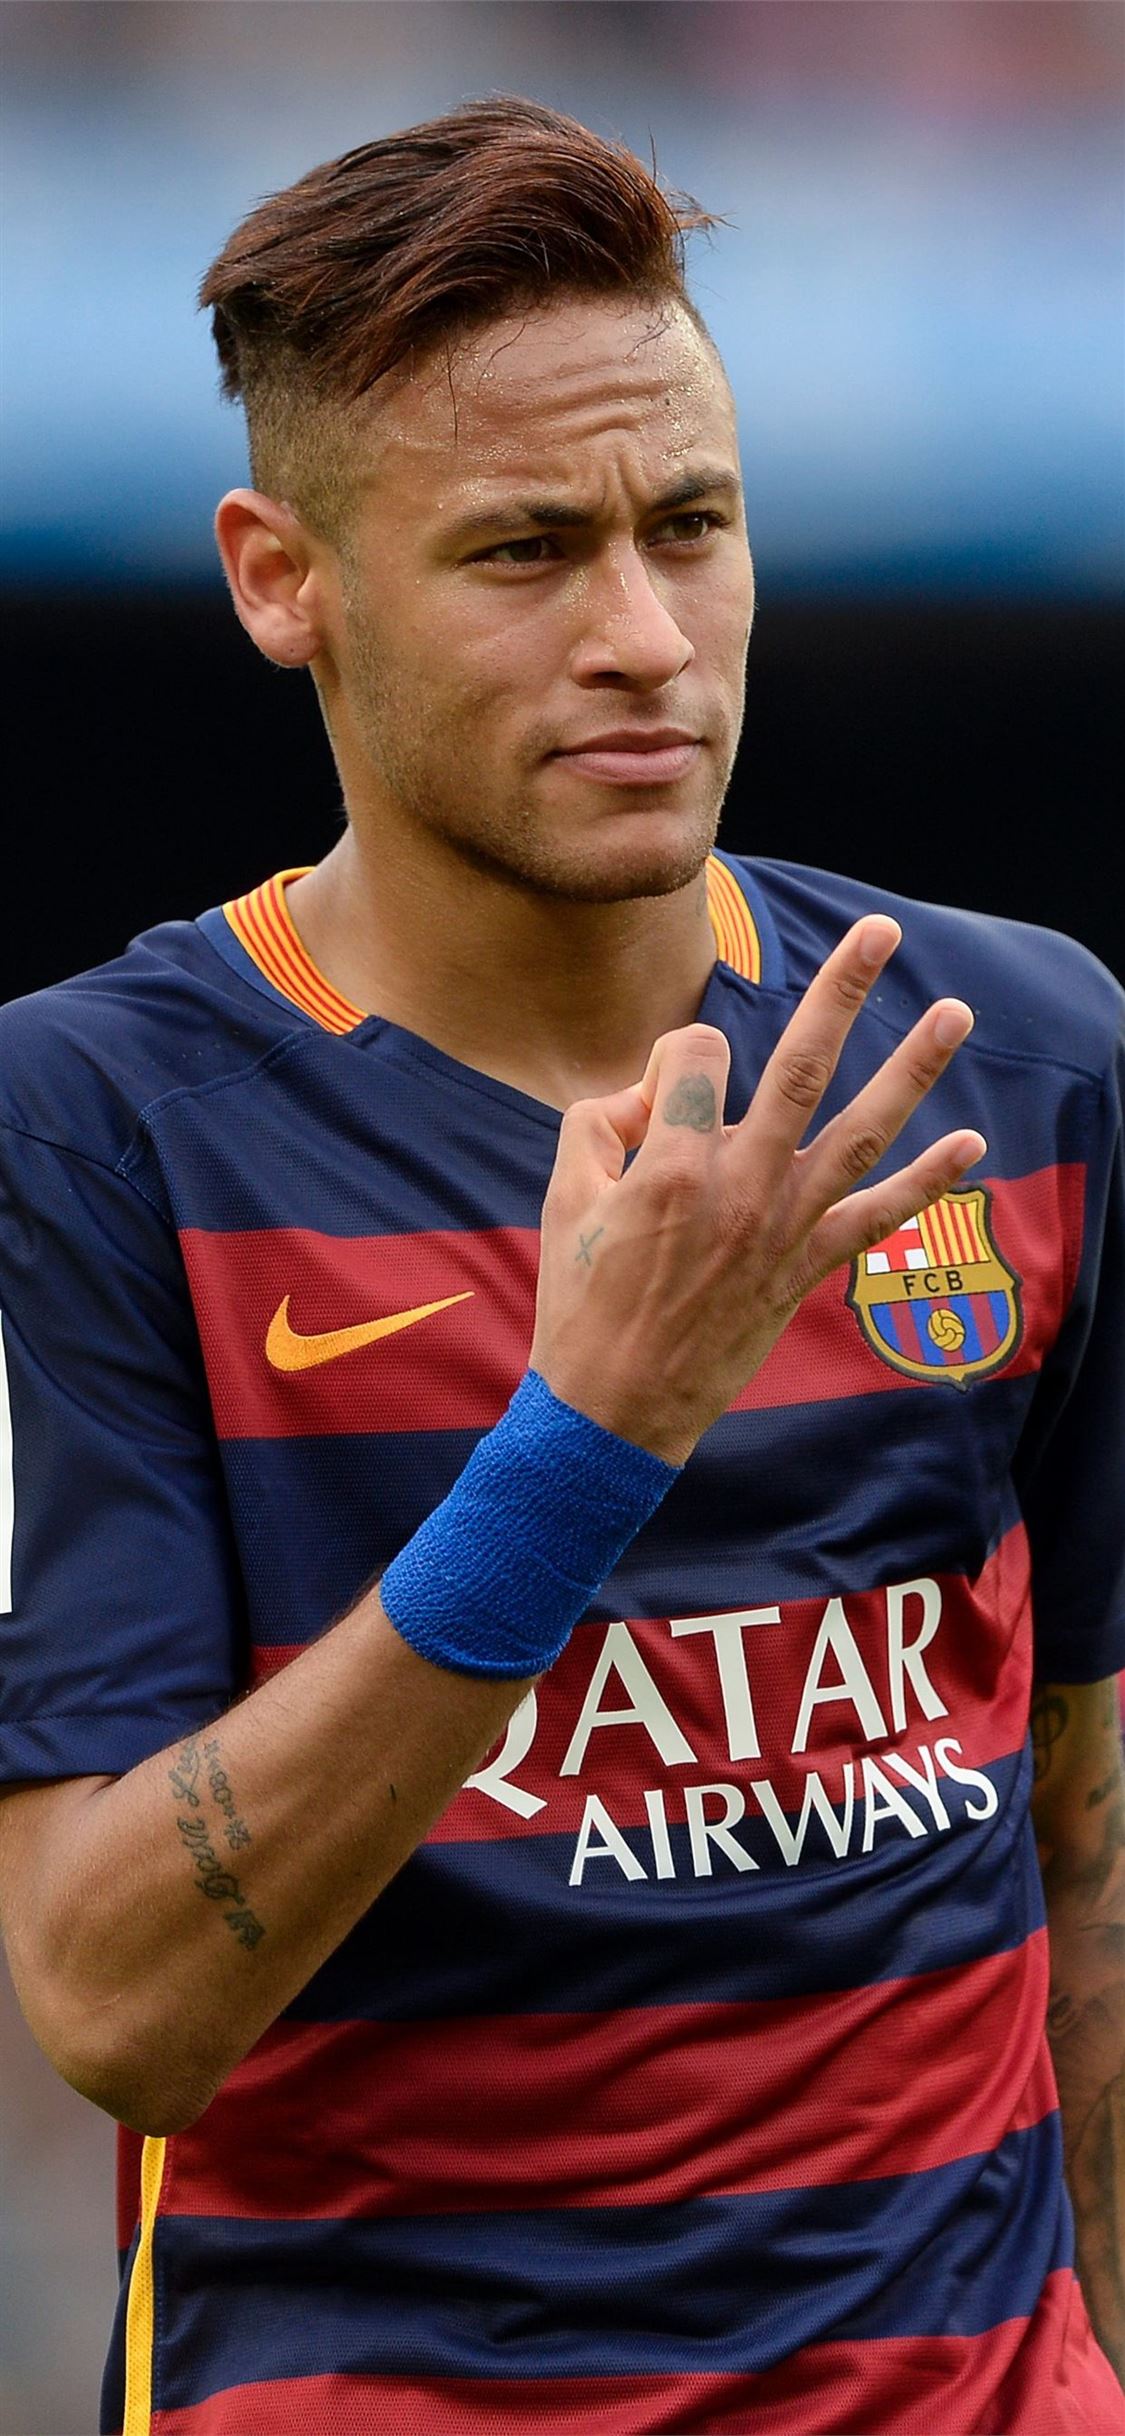 Sự chuyển nhượng của Neymar đến Paris Saint-Germain đã lập kỷ lục với mức phí trị giá hàng trăm triệu euro. Thông tin chi tiết này phản ánh chất lượng và giá trị của ngôi sao bóng đá này đến đâu.